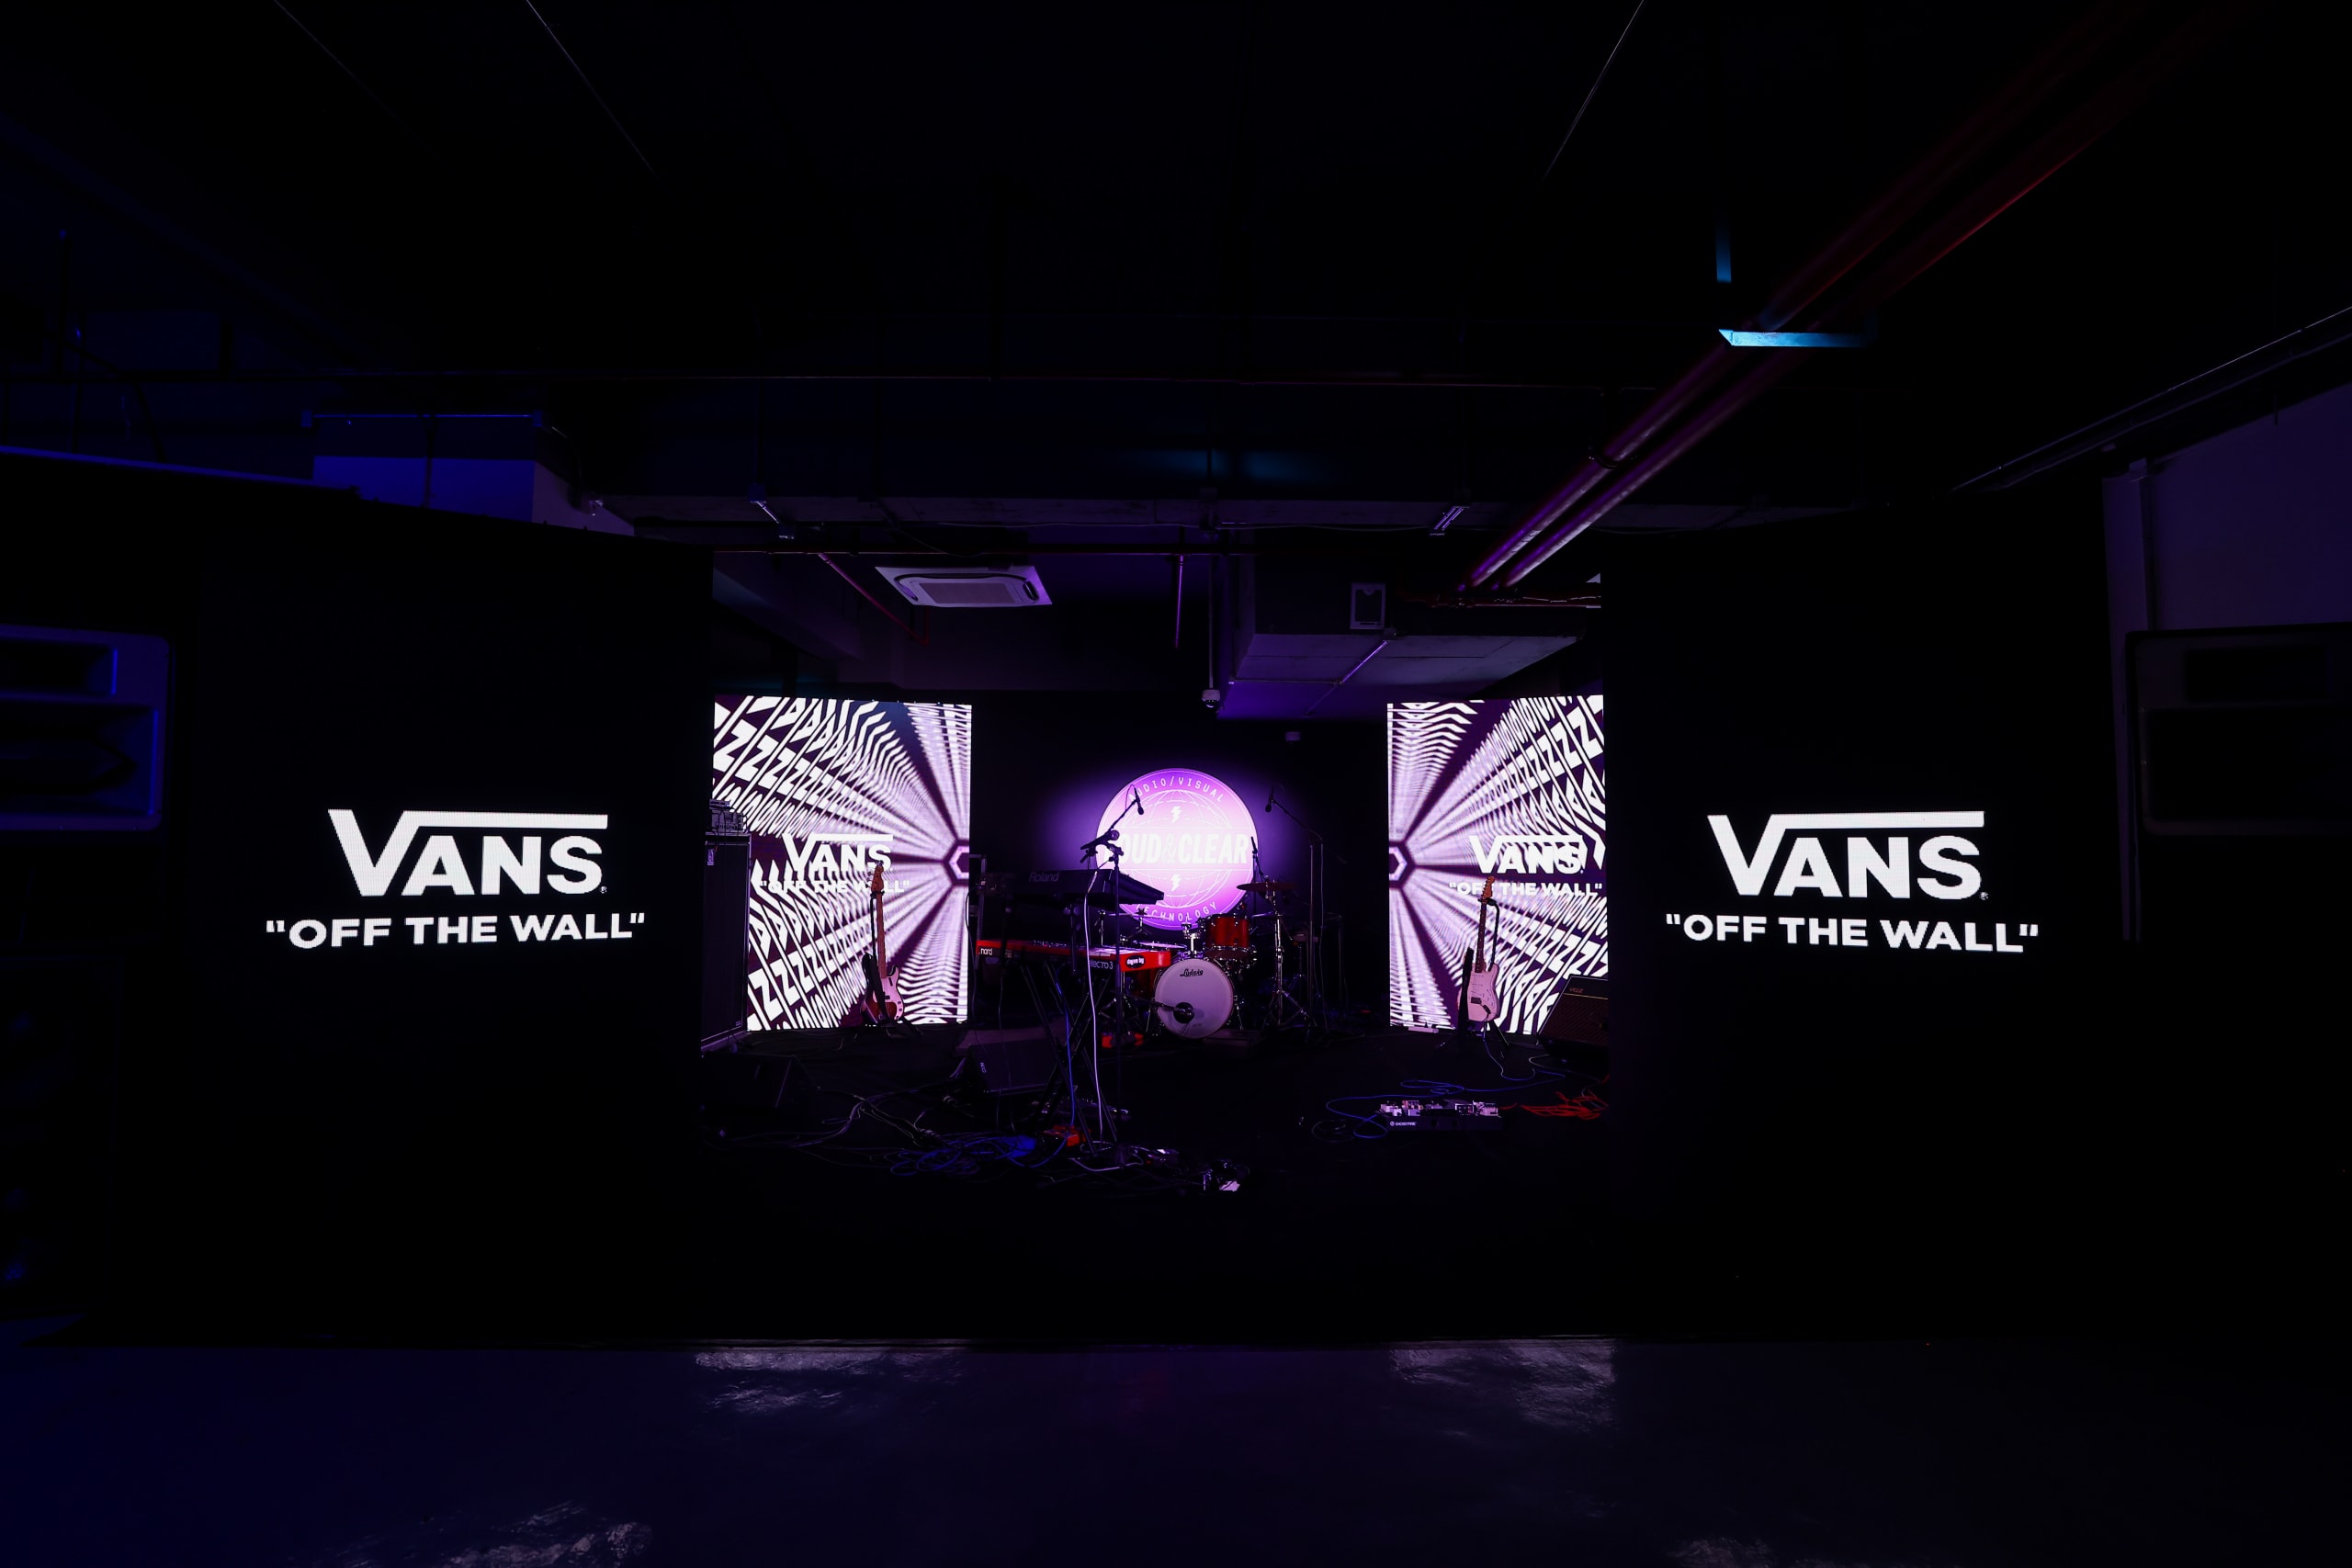 Vans 于上海开设全球首家搭载智慧零售系统的品牌体验中心